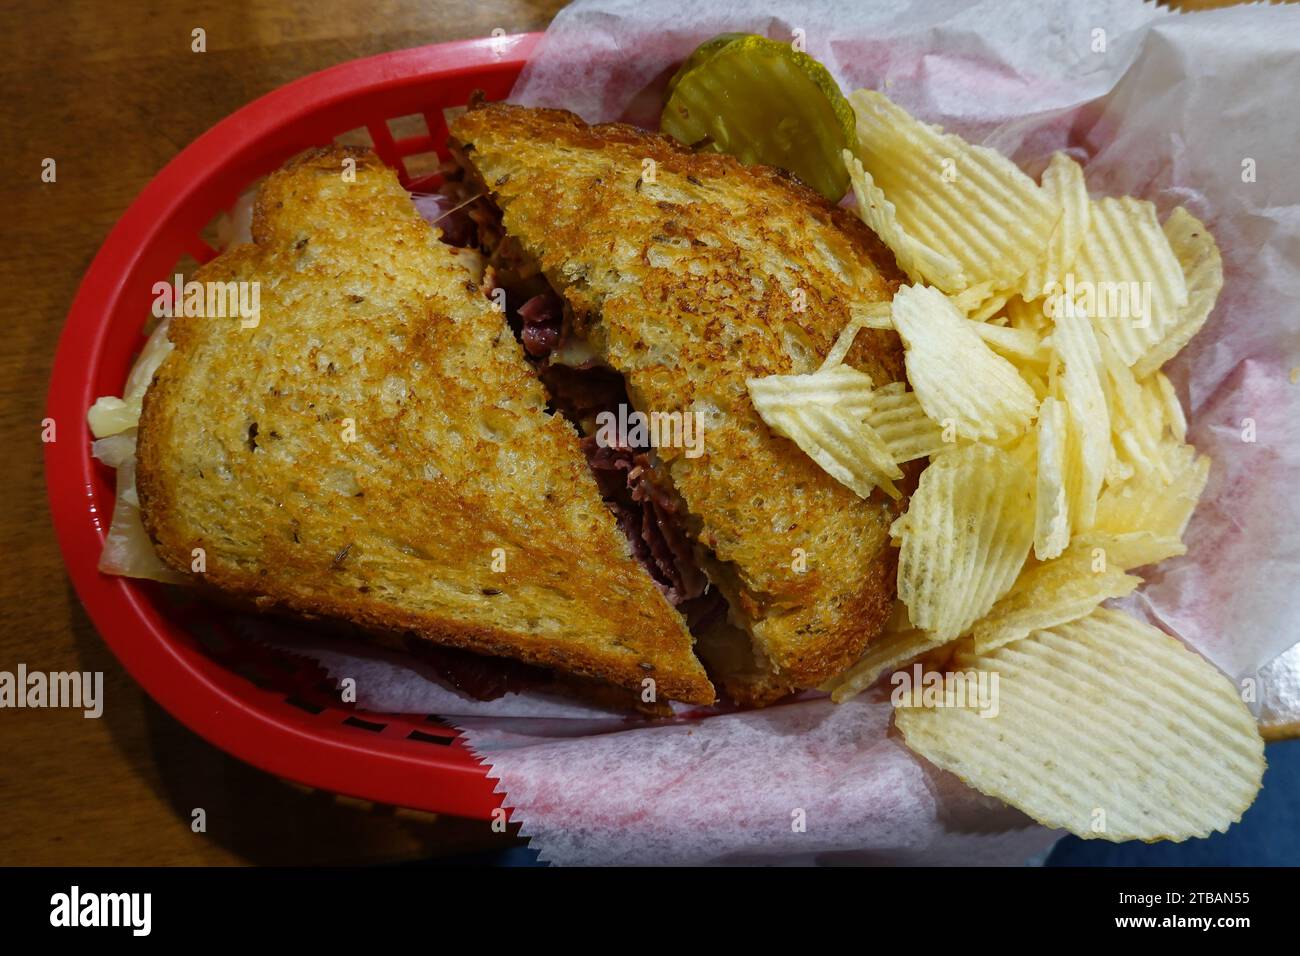 Un classico sandwich Reuben servito in un cestino con patatine fritte e sottaceti a base di carne in scatola, crauti, formaggio svizzero e salsa speciale. Foto Stock